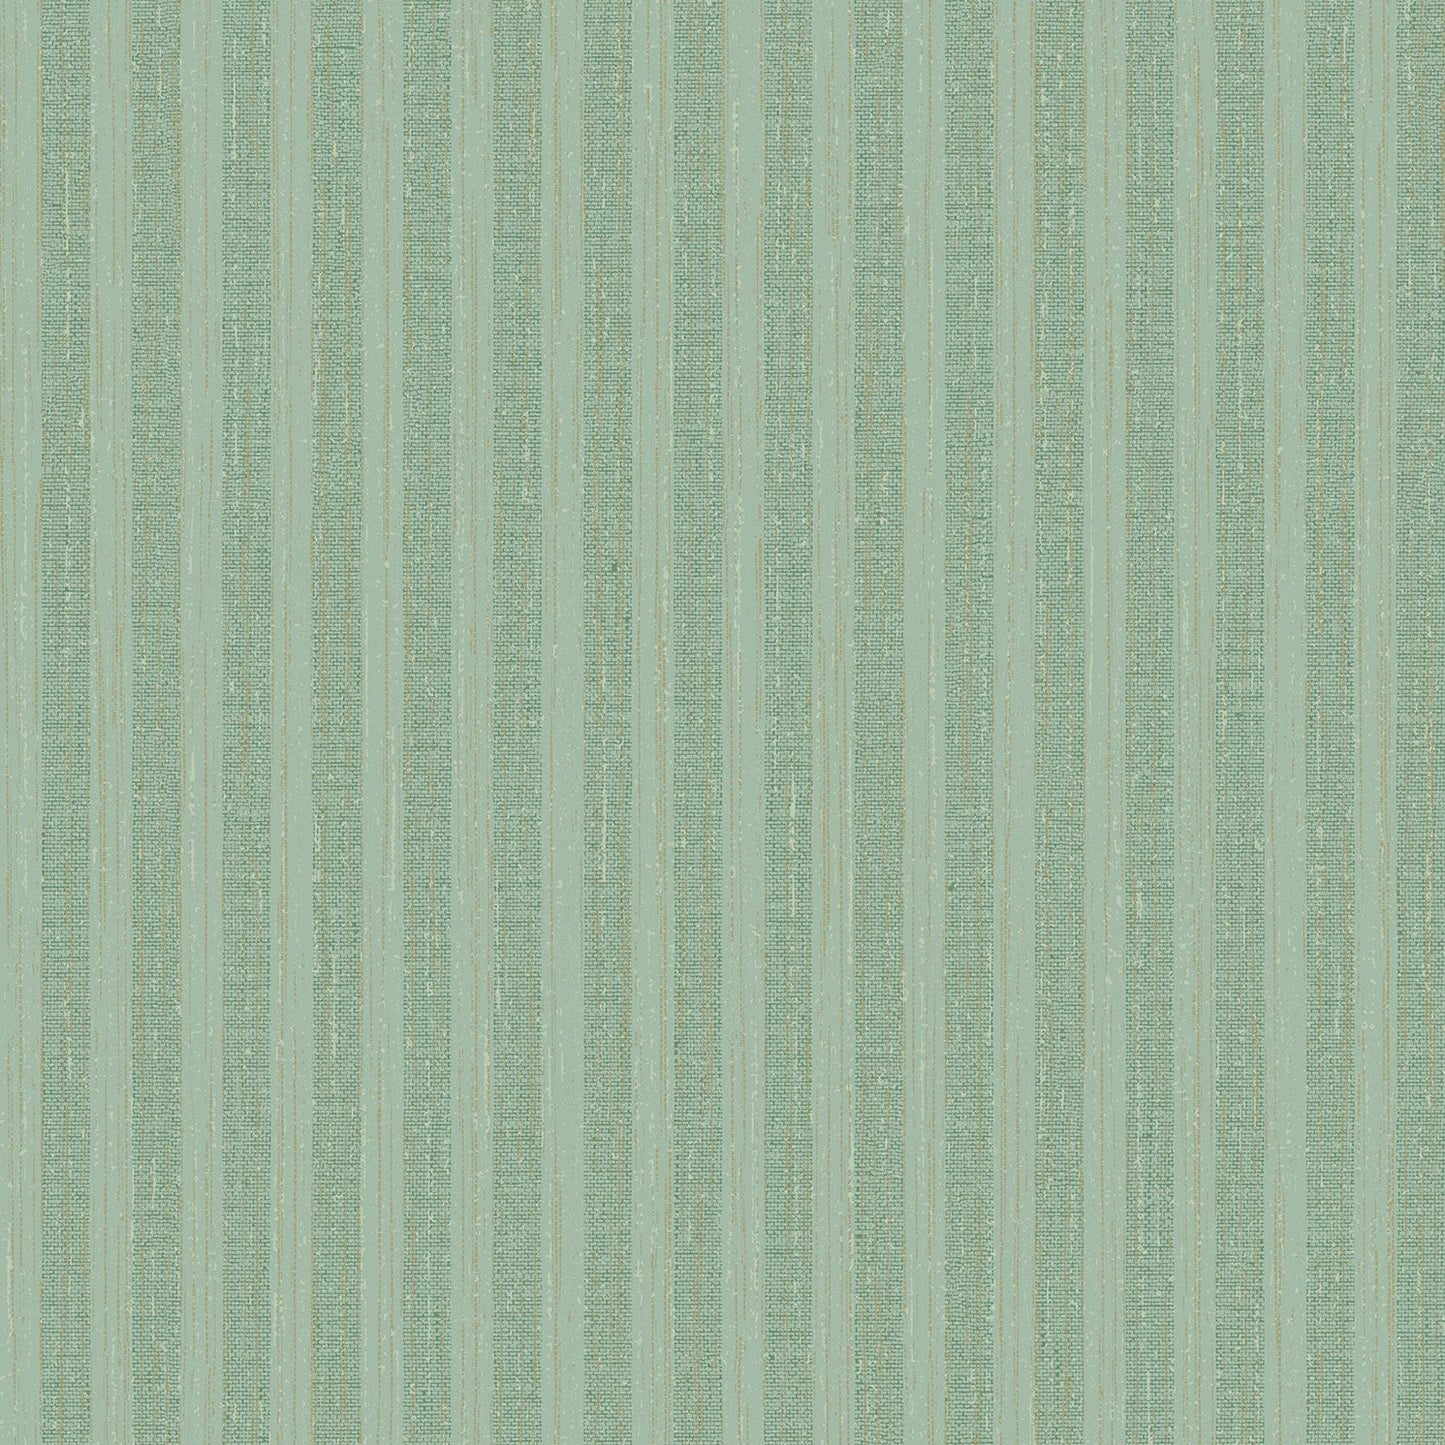 Acquire 2959-SDM06005 Textural Essentials Brodie Green Stripe Green Brewster Wallpaper